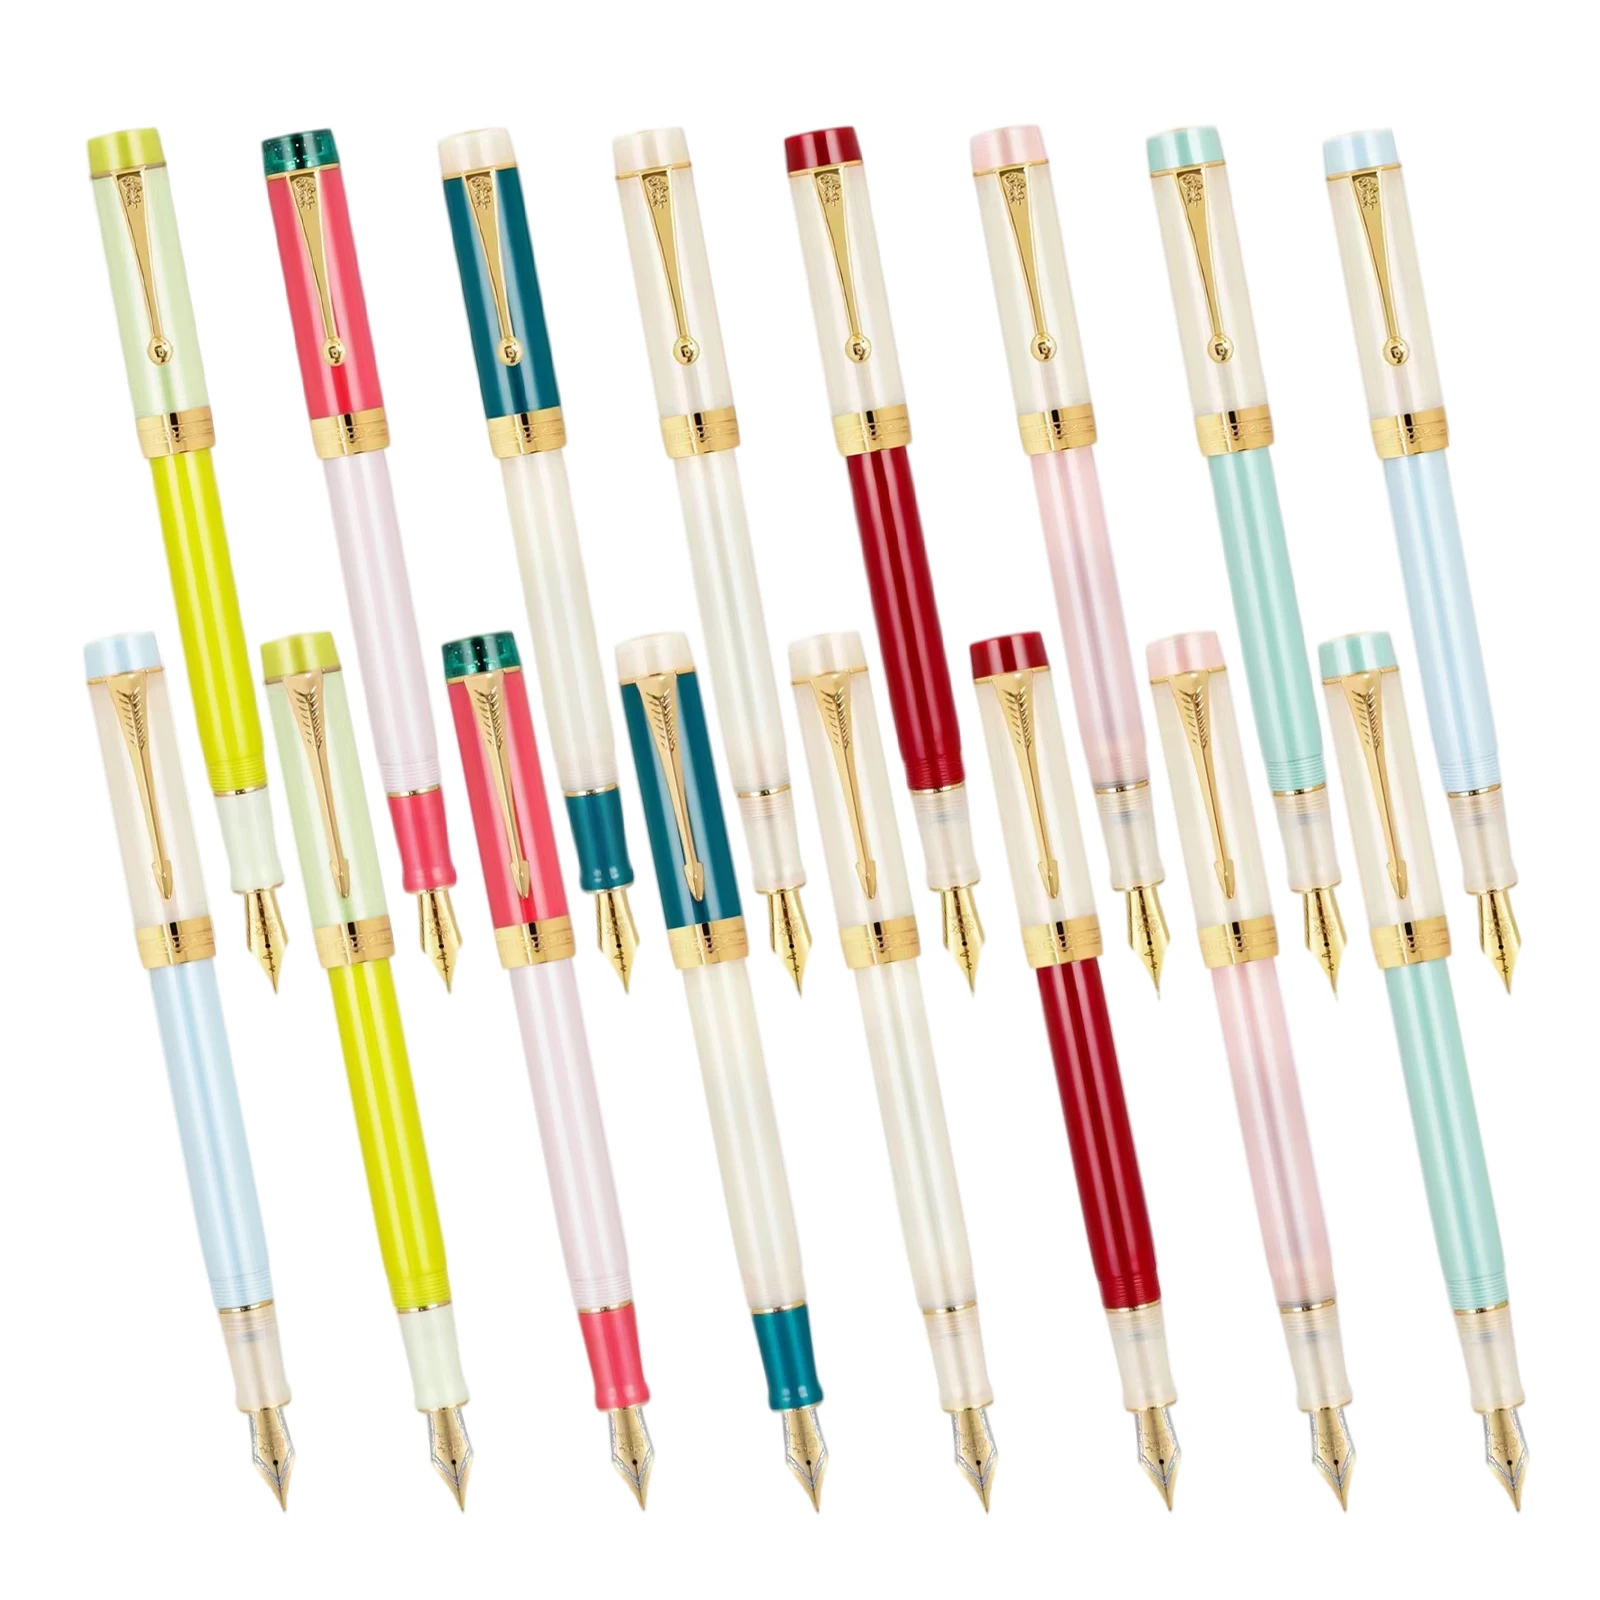 

Цветная ручка Jinhao Century 100 с сердцебиением стандартные наконечники F чернильные ручки для письма школьные канцелярские принадлежности для школы и офиса подарок для студентов